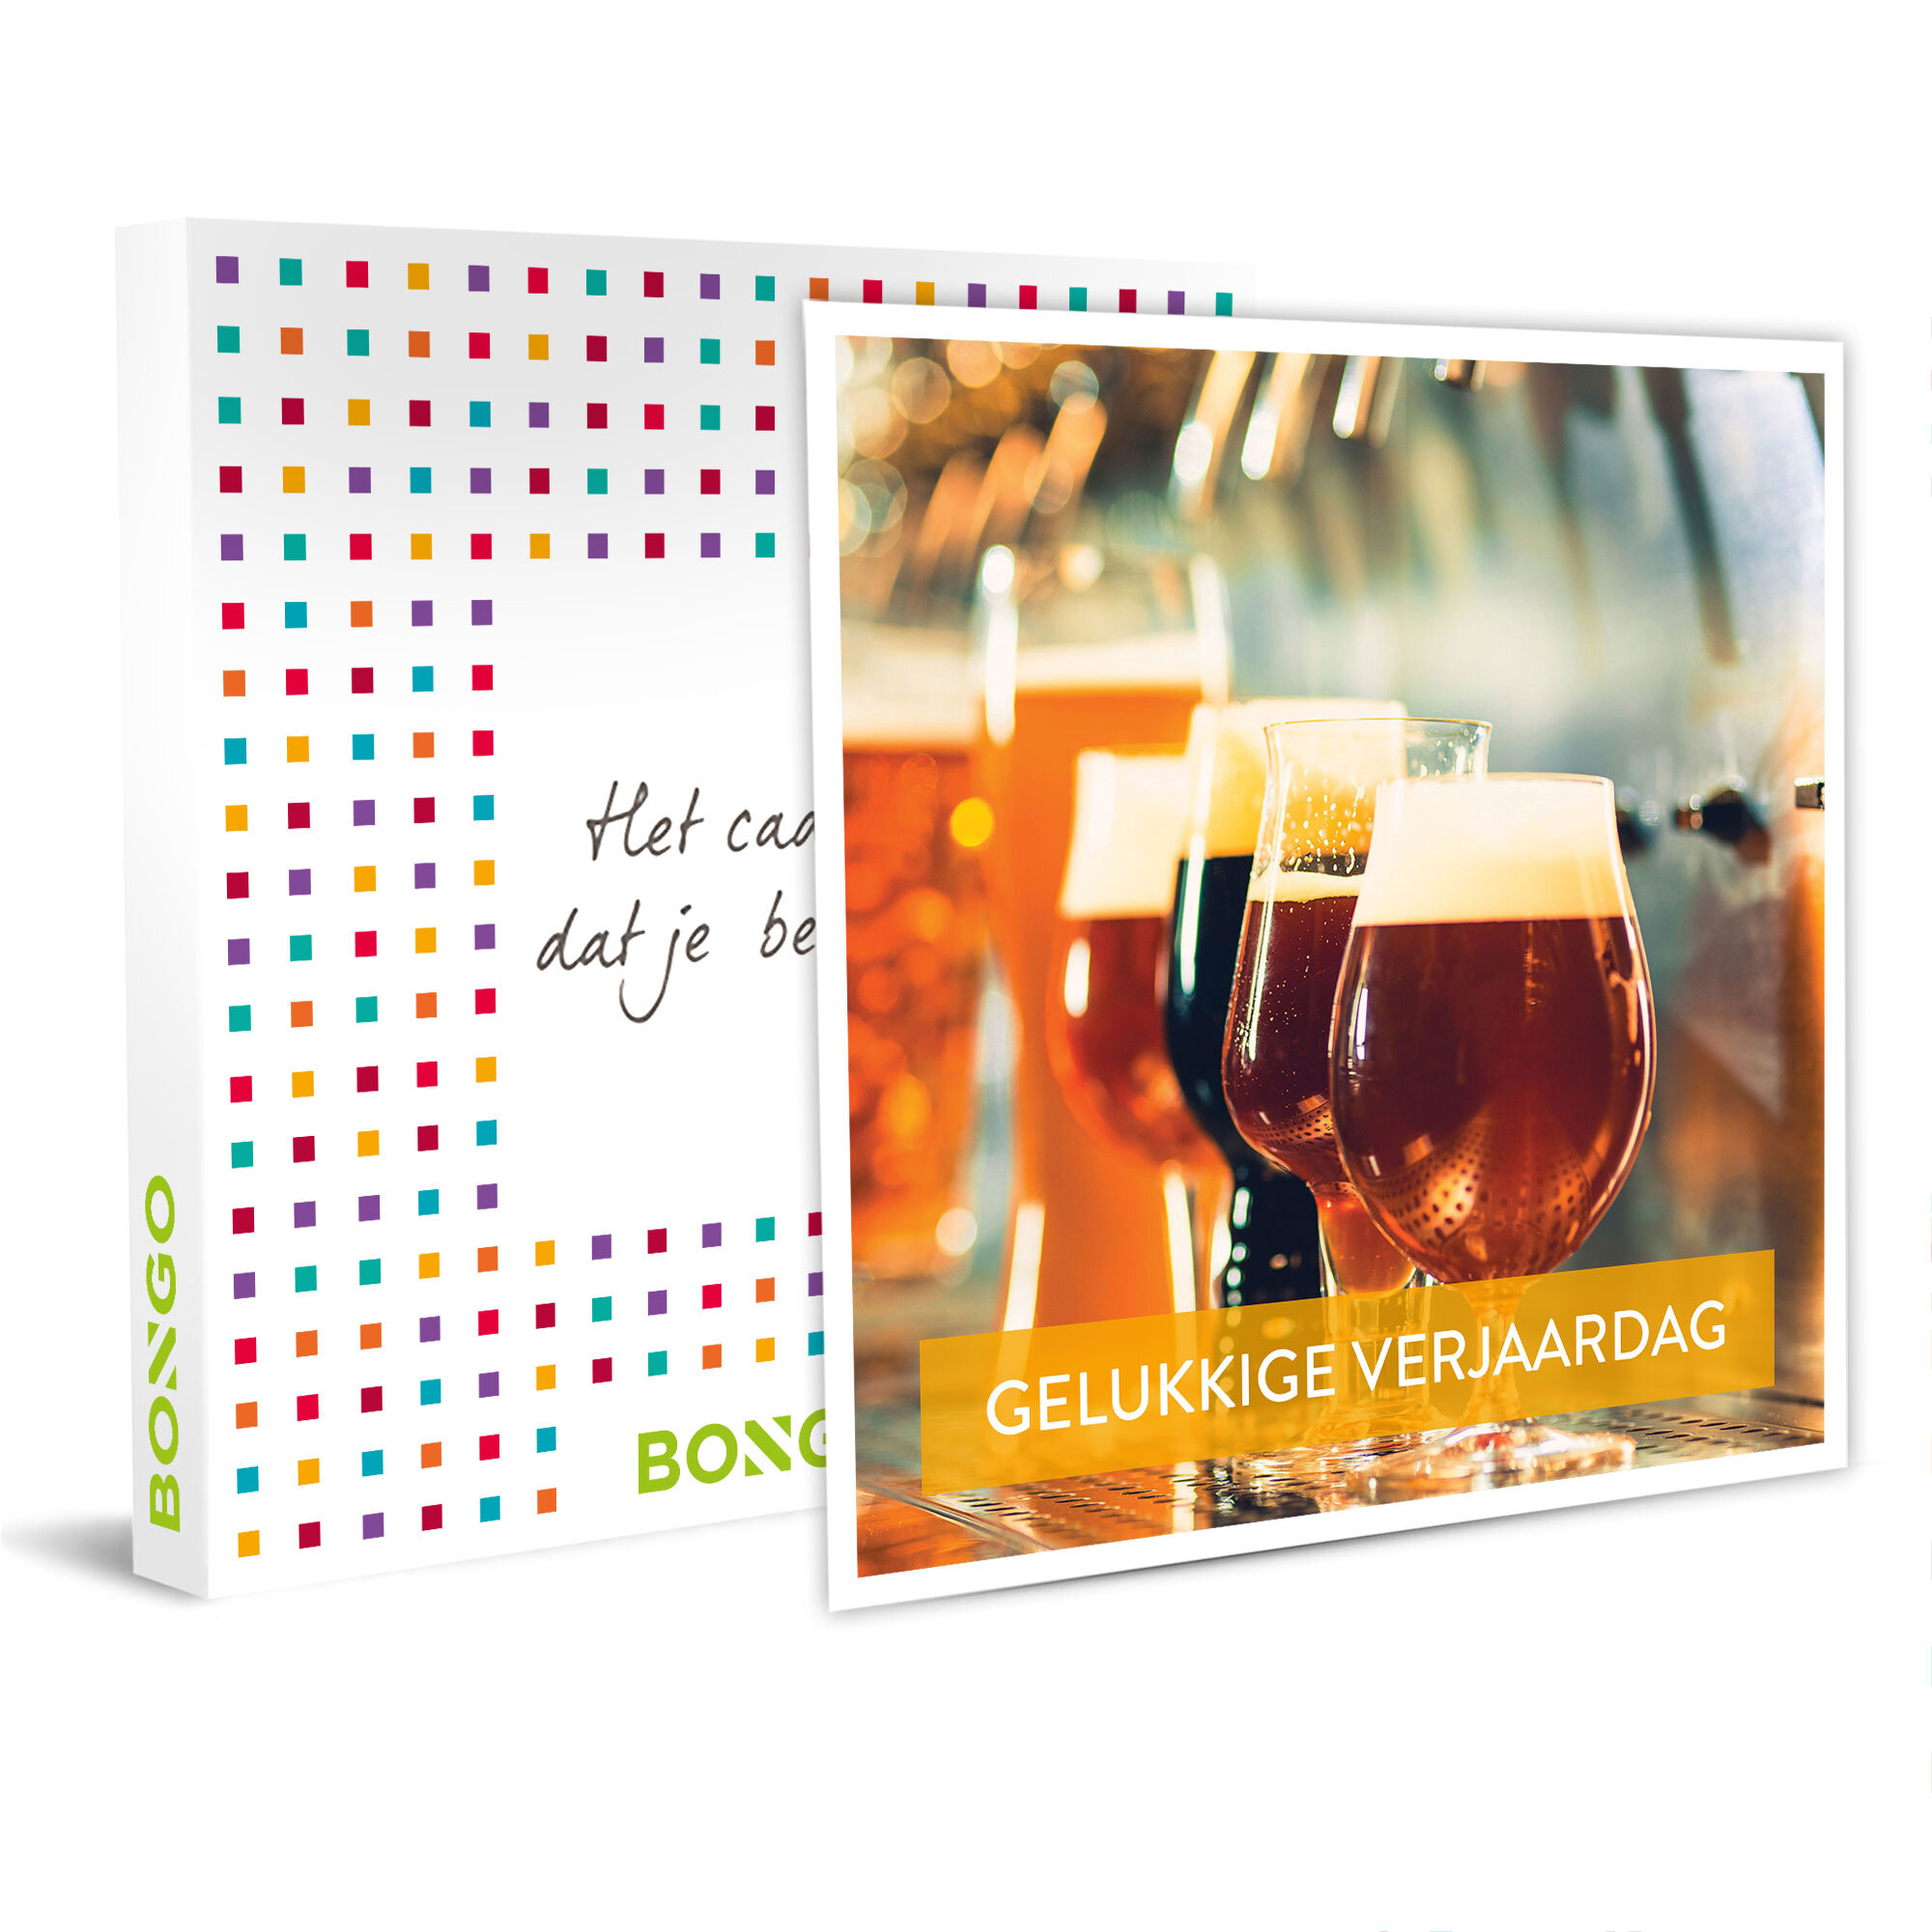 De ideale verjaardag voor een bierliefheber: een Belgische bierdegustatie